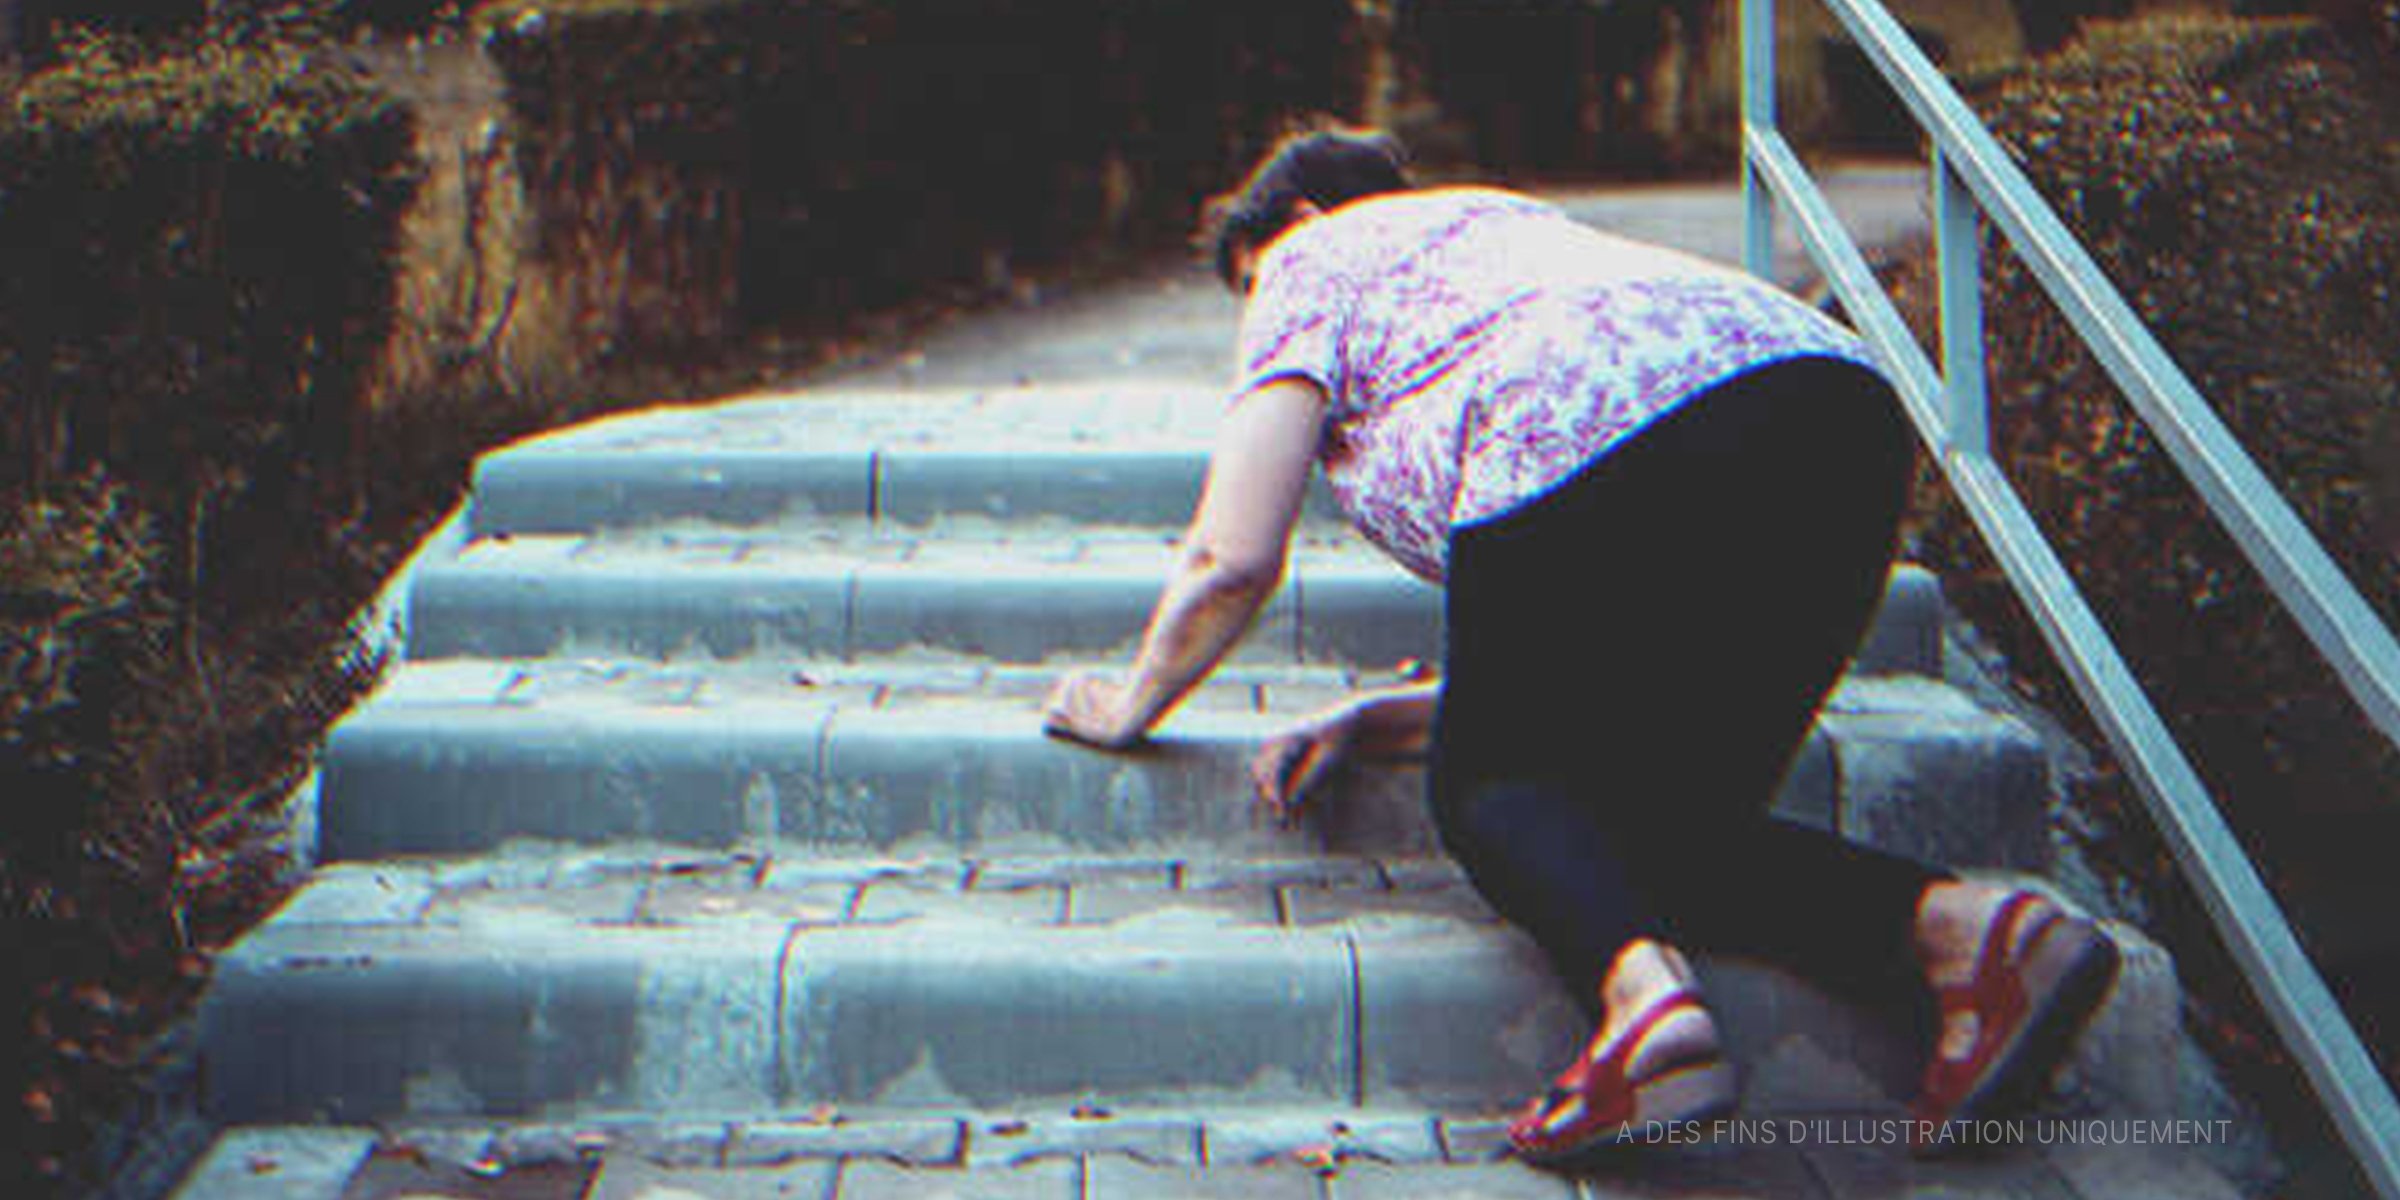 Une dame âgée tombée dans les escaliers | Photo : Shutterstock